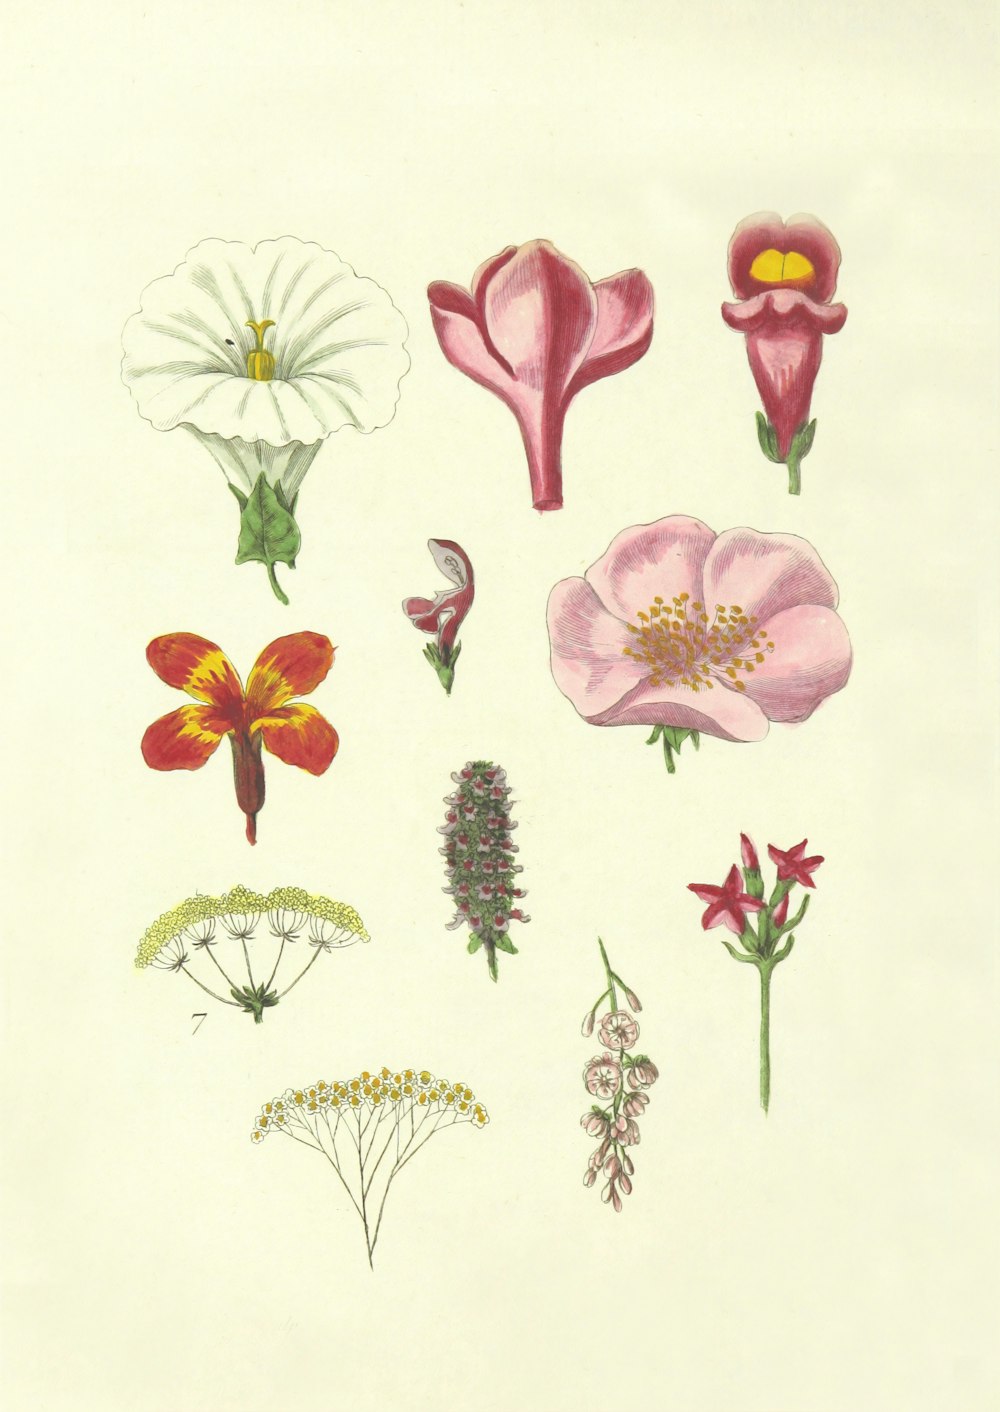 ilustrações de flores de cores variadas